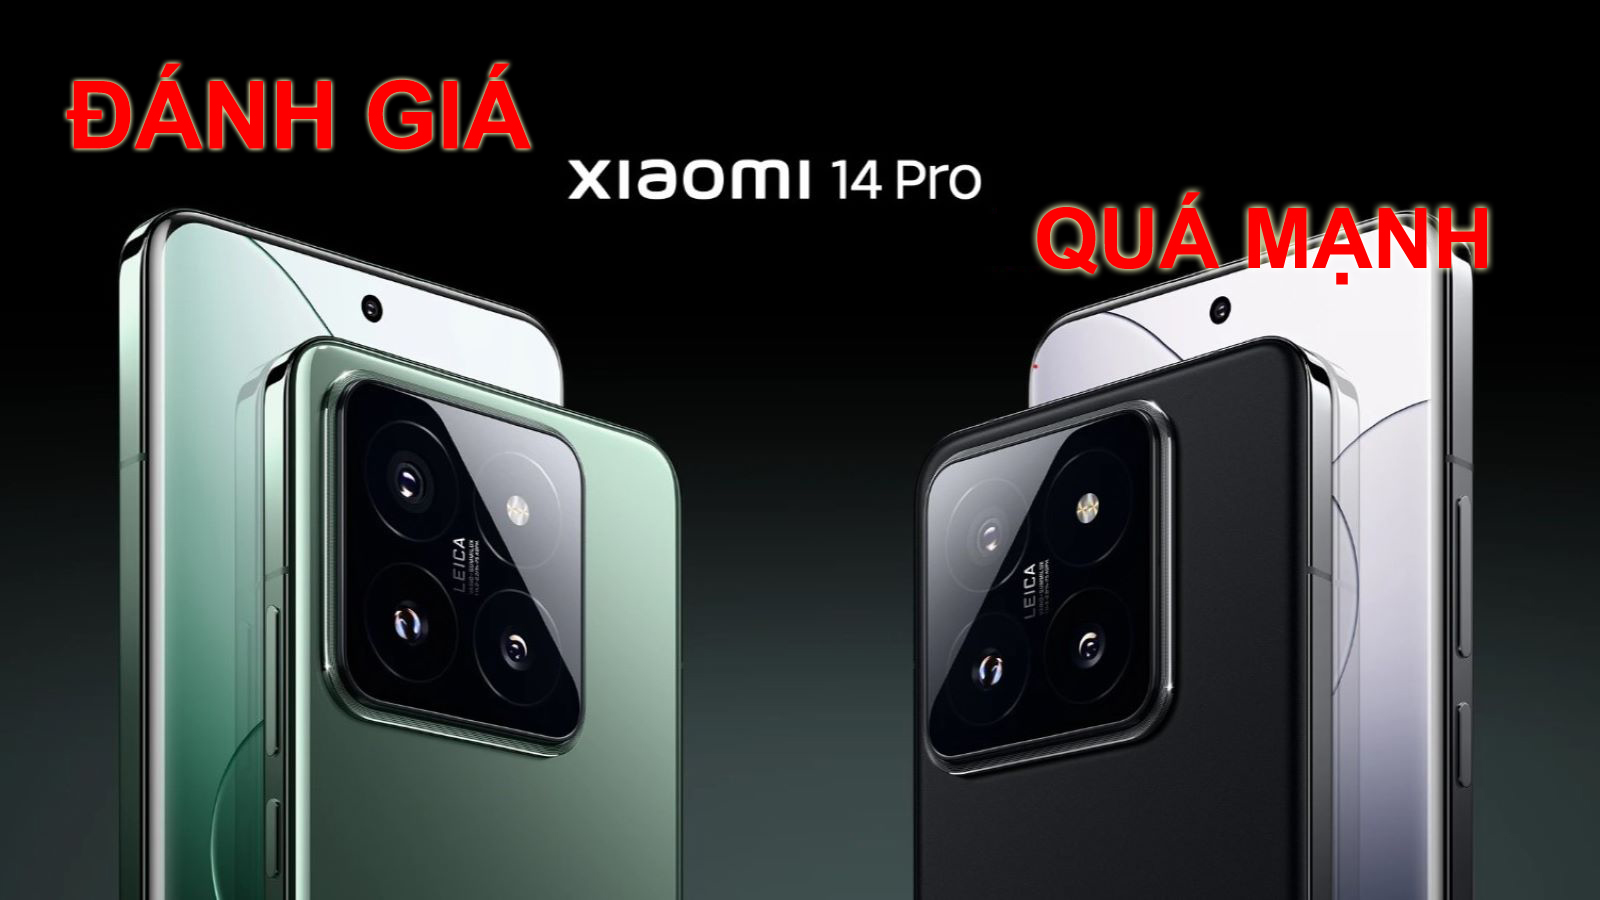 Đánh giá Xiaomi 14 Pro: quá mạnh